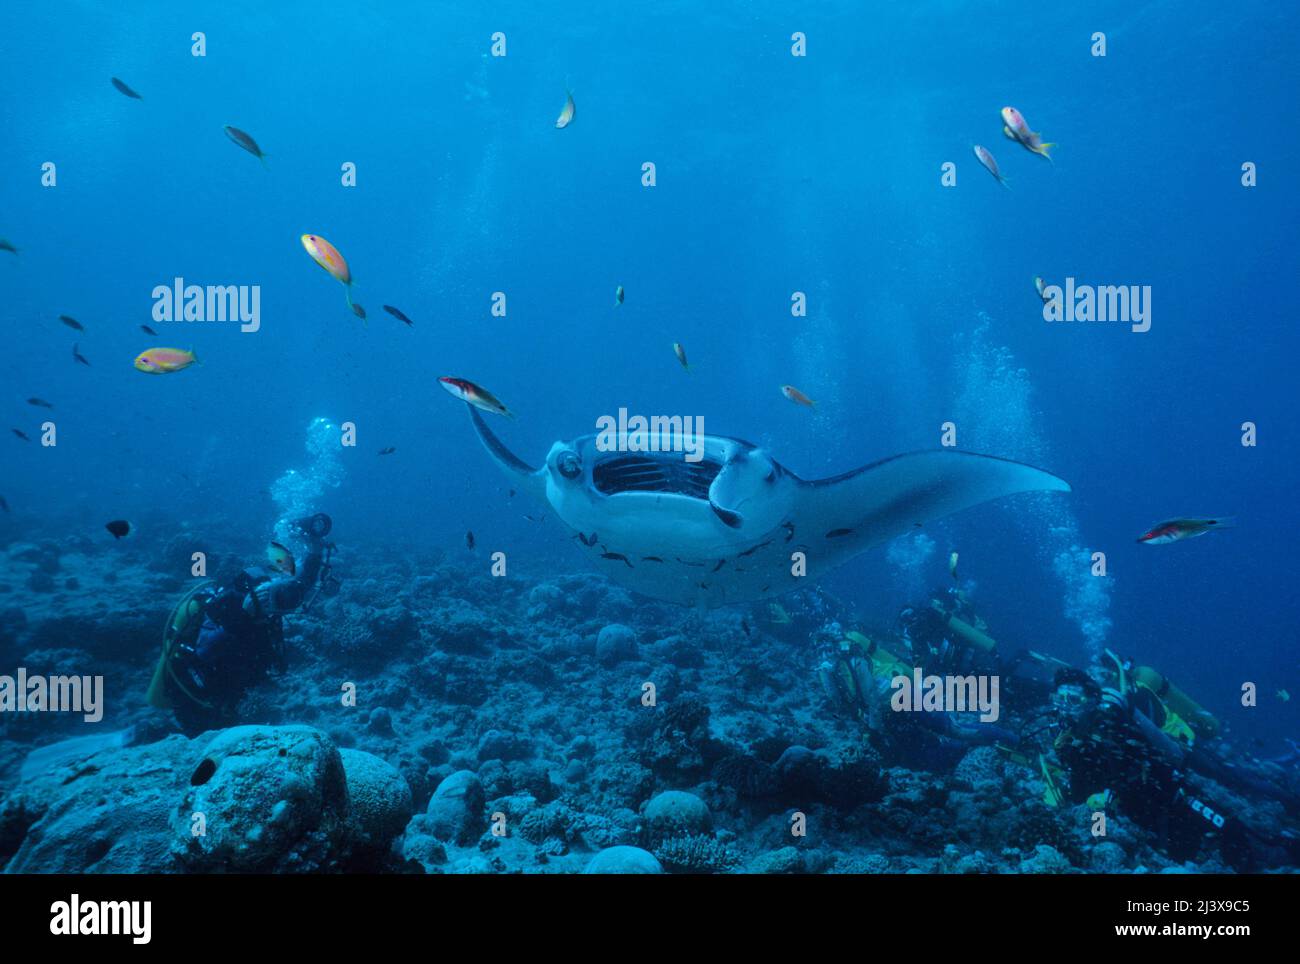 Un groupe de plongeurs observant le rayon manta océanique géant ou le rayon manta géant (Manta birostris), à bouche ouverte, Ari Atoll, Maldives, Océan Indien, Asie Banque D'Images